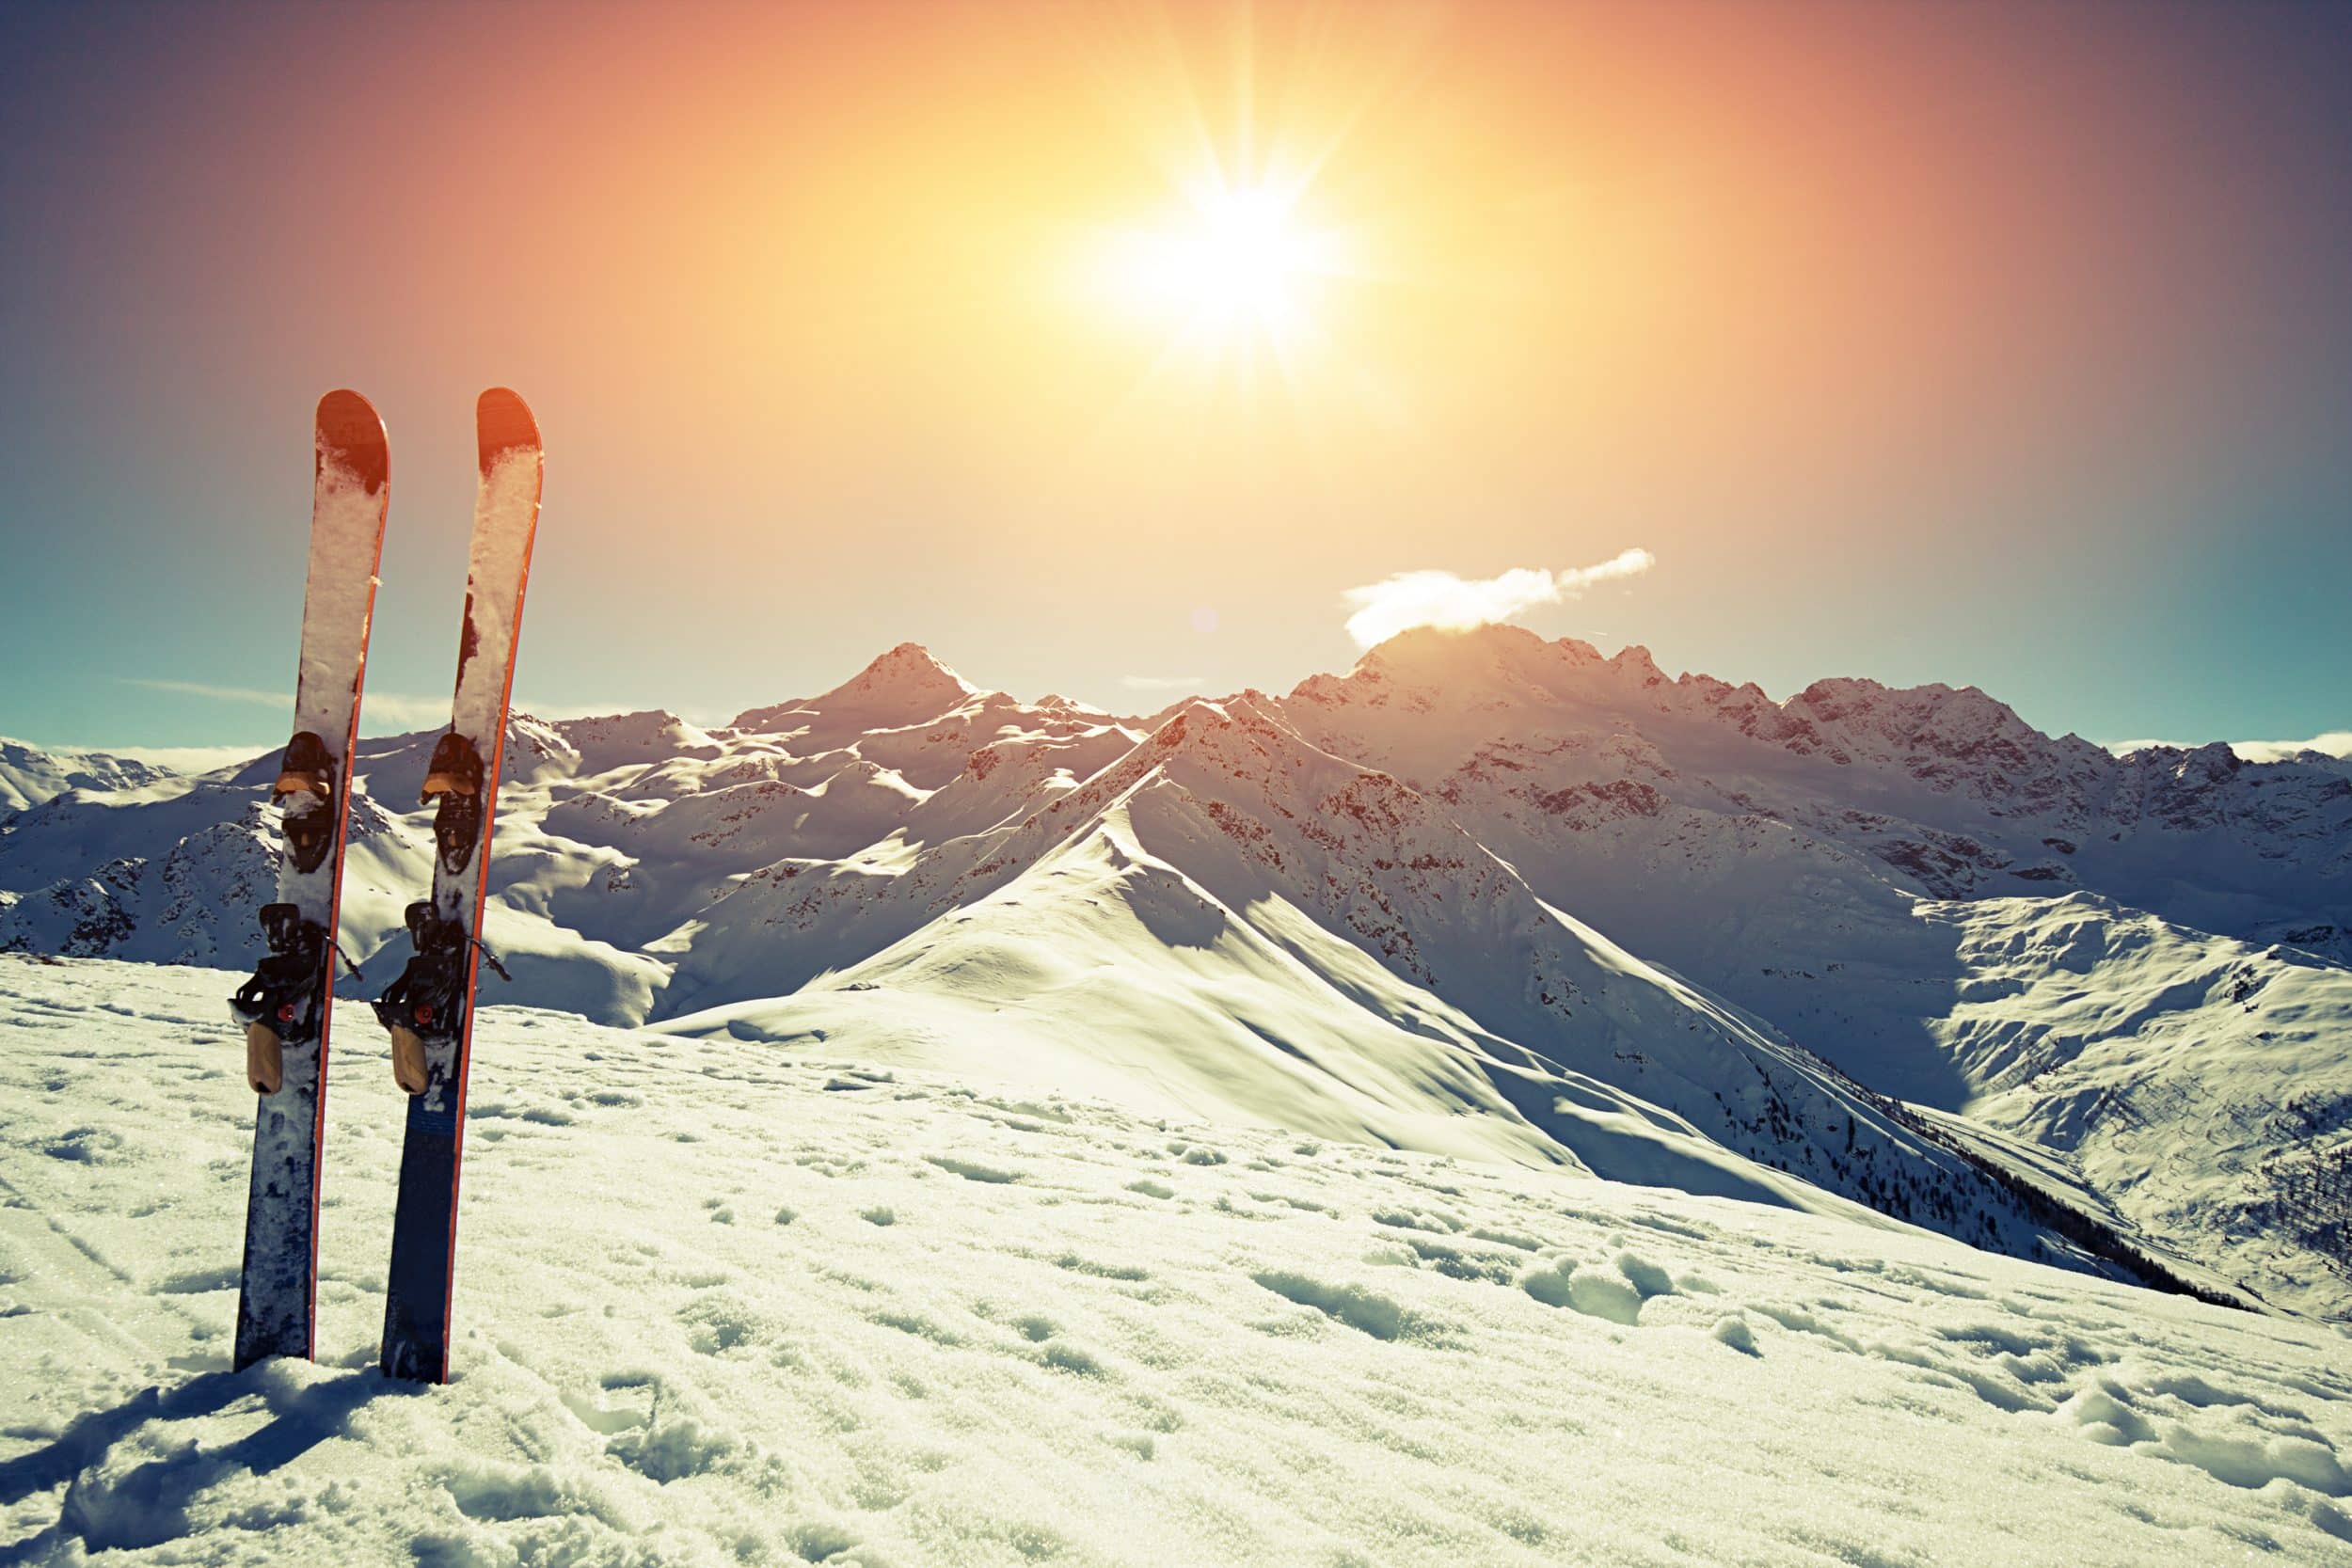 Settimana bianca: sciare sì, ma proteggendo il nostro corpo - Assidai